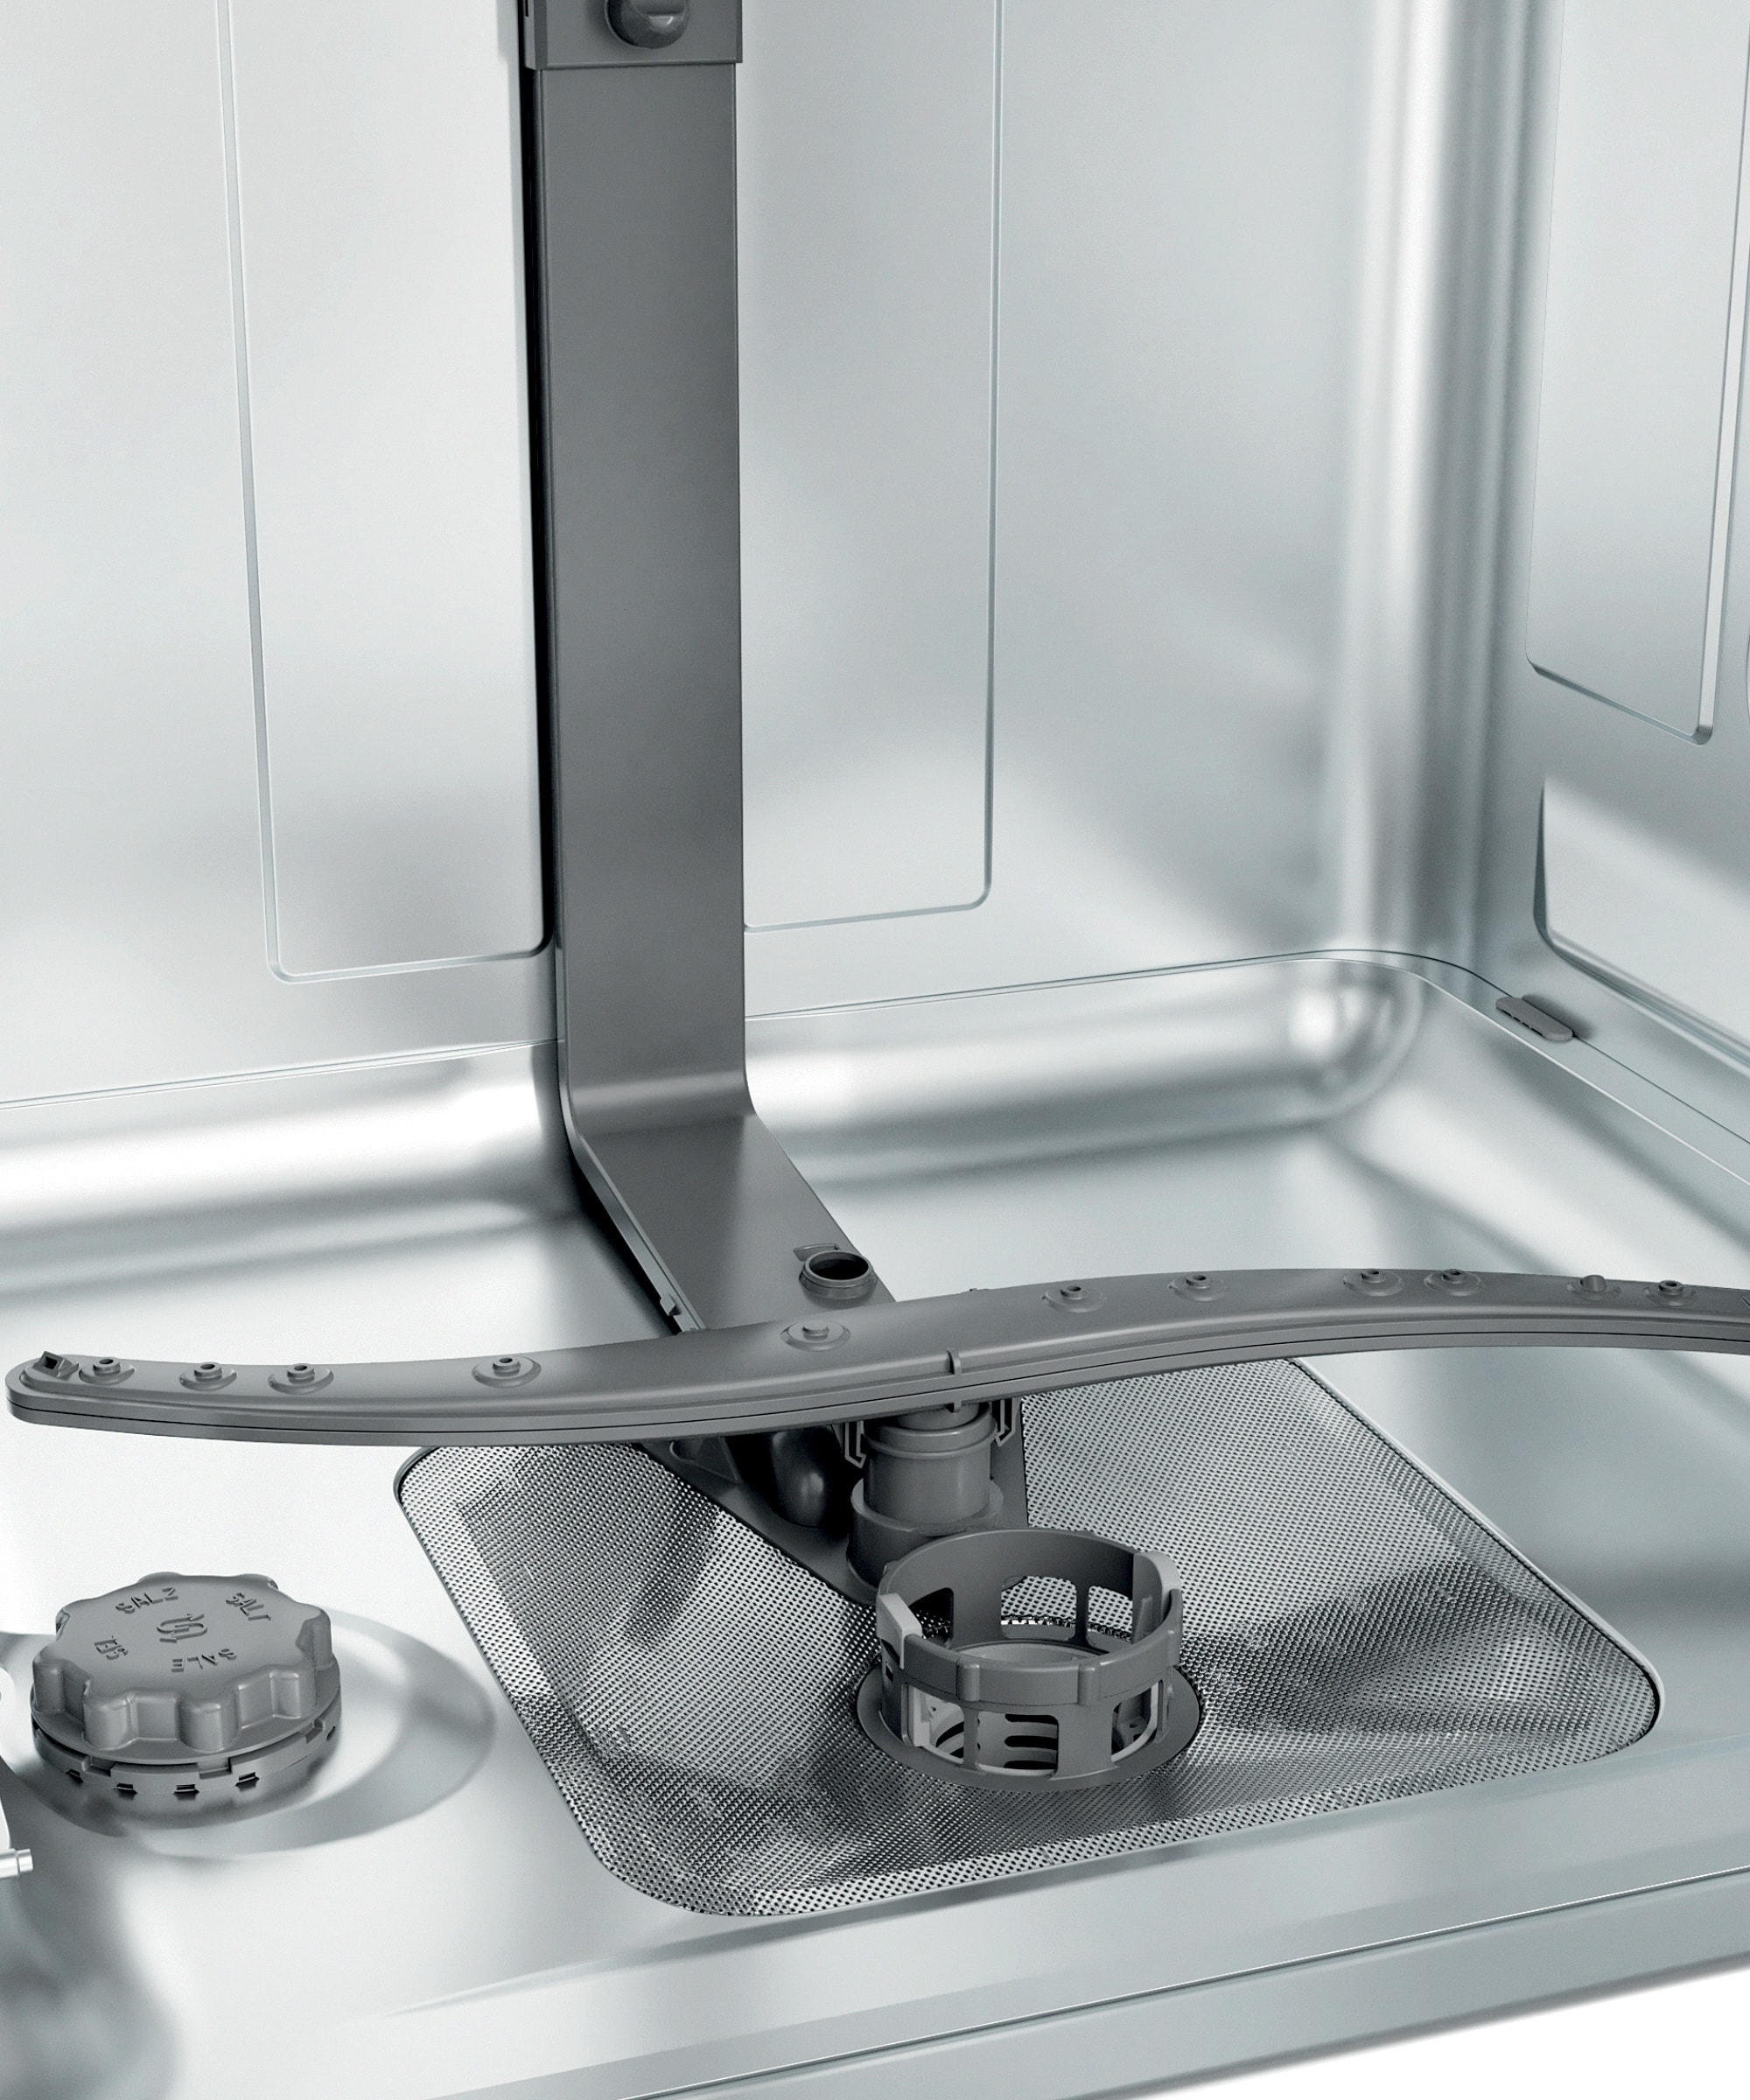 whirlpool - Lave vaisselle integrable 60 cm WBC 3 C 34 PB - Lave-vaisselle  - Rue du Commerce